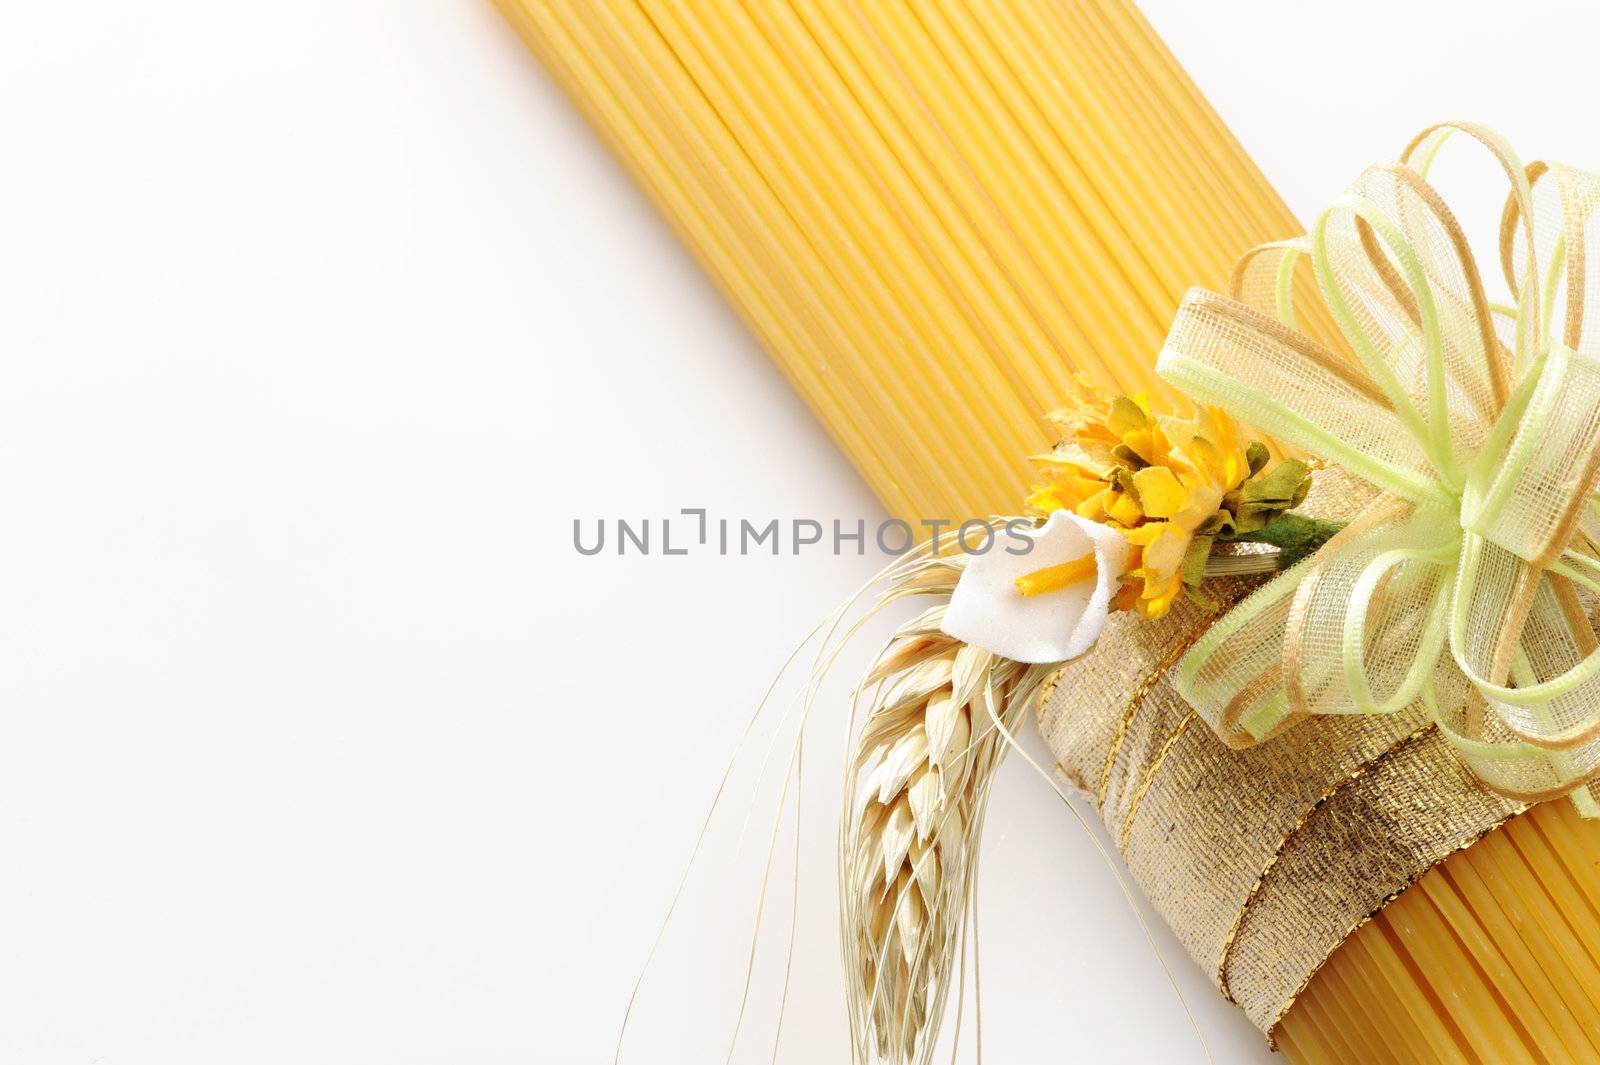 spaghetti, italian pasta: similar picture on my portfolio by stokkete